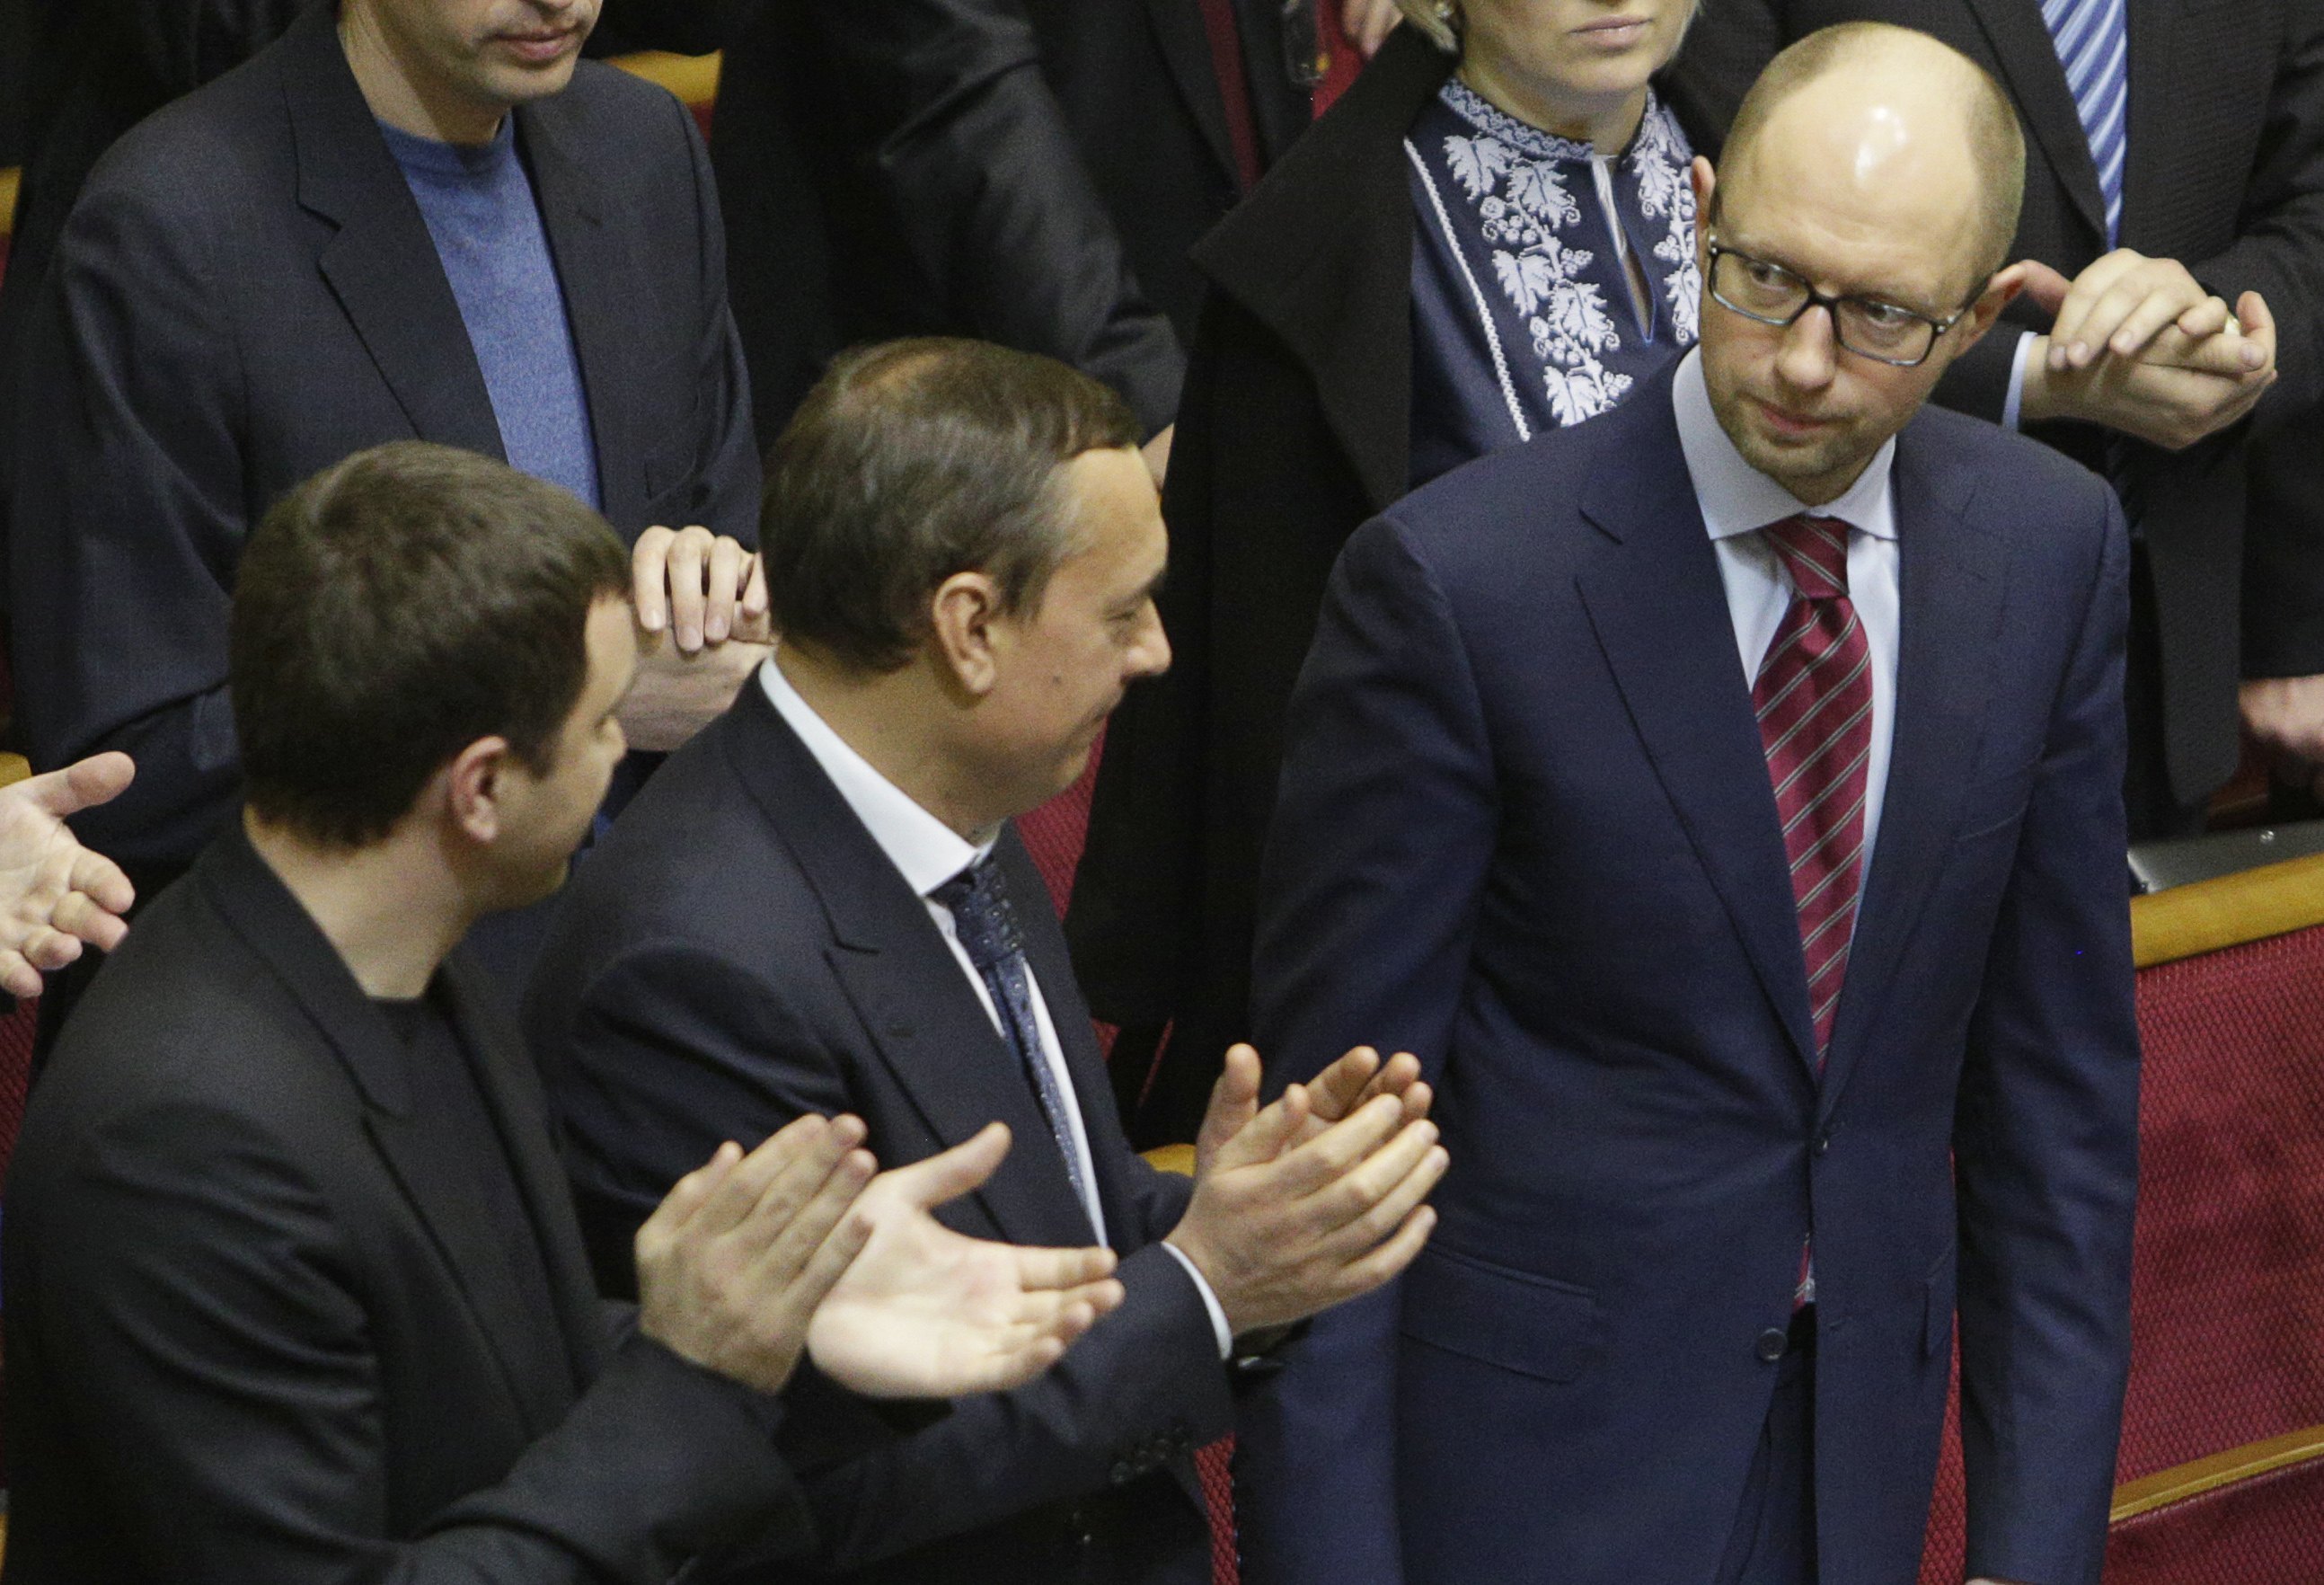 1 εκατ. δημόσιοι υπάλληλοι θα περάσουν από “έλεγχο” της αφοσίωσής τους στη νέα κυβέρνηση της Ουκρανίας